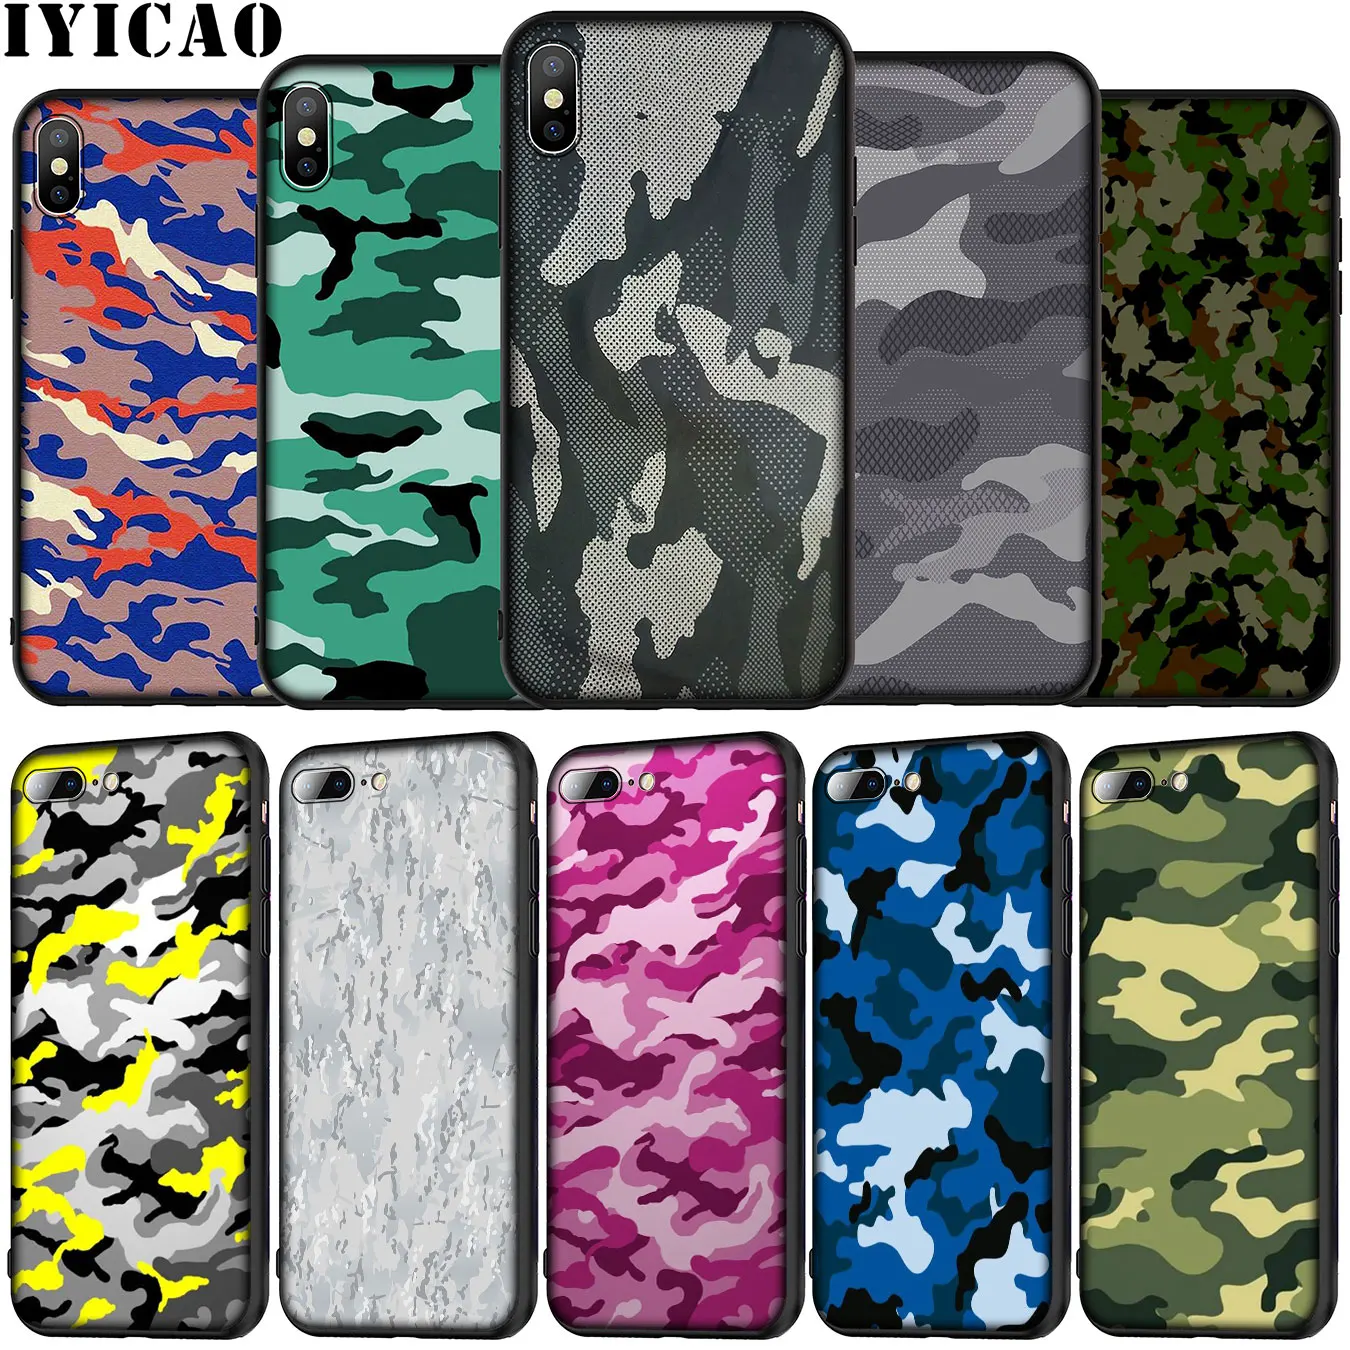 Фото Армейский камуфляжный чехол IYICAO с рисунком мягкий силиконовый для телефона iPhone XR